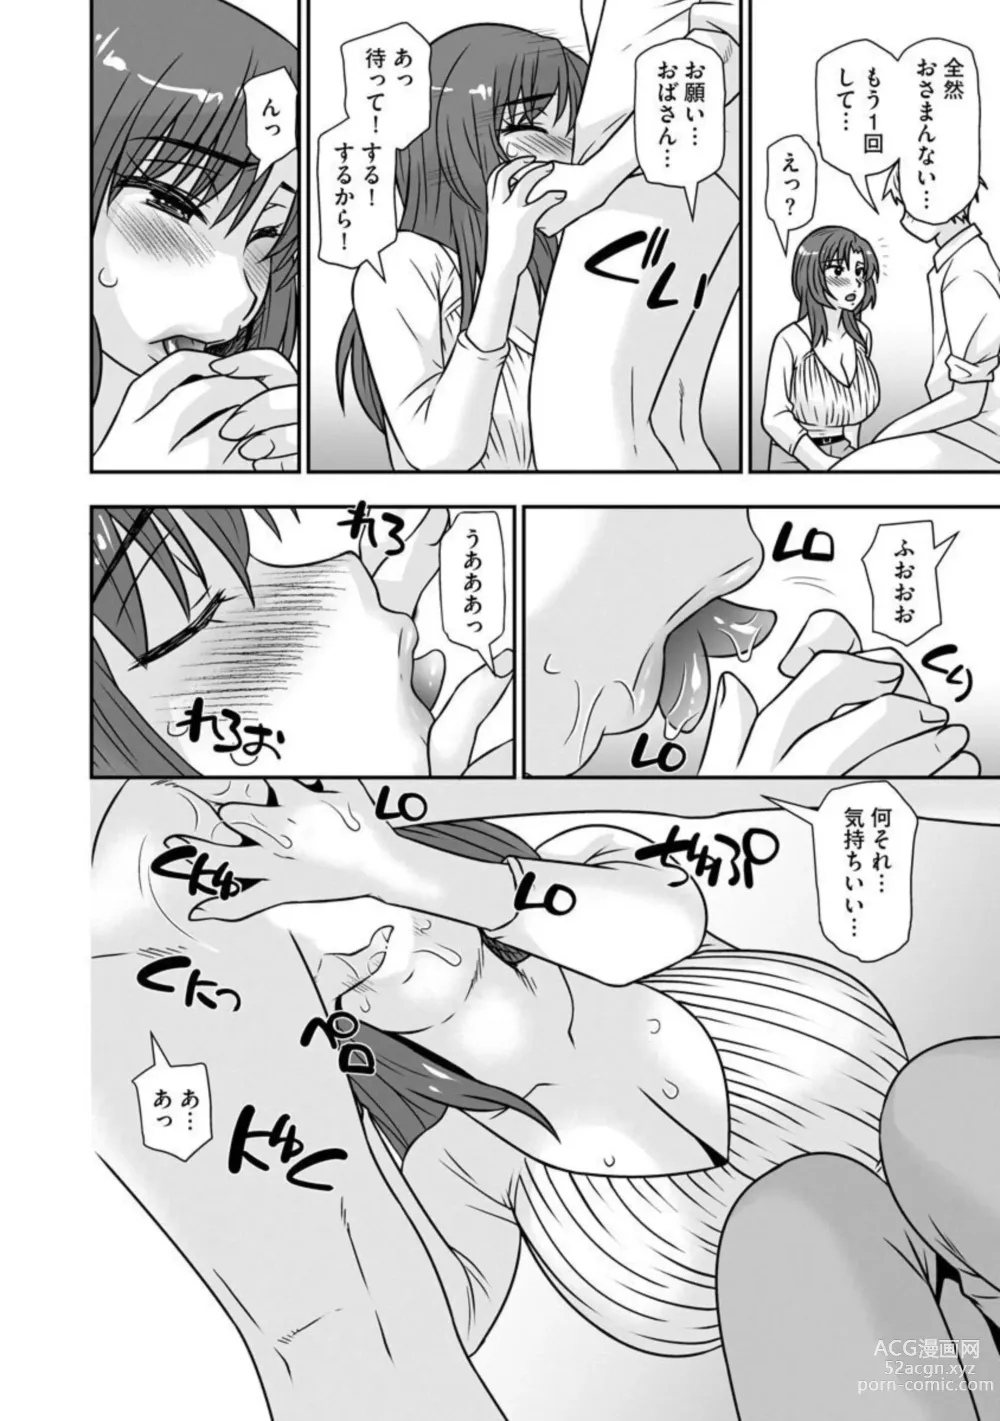 Page 21 of manga Netori Haha Musume no Kareshi no Are ga Wasurerarenakute 1